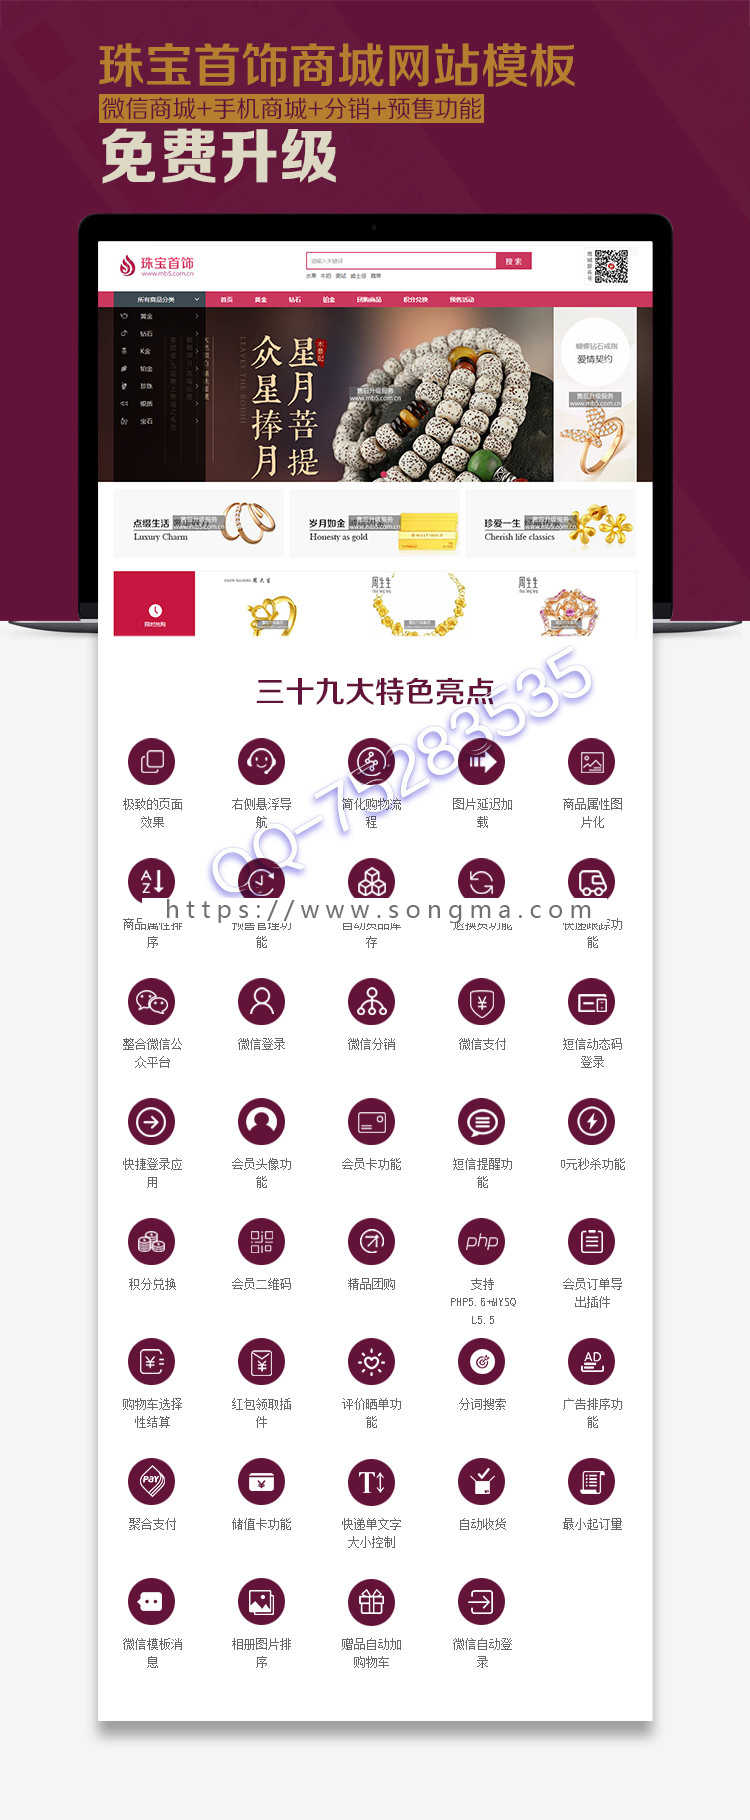 ecshop珠宝首饰 奢侈品商城PC网站模板 微信分销+wap手机网站 支持PHP7